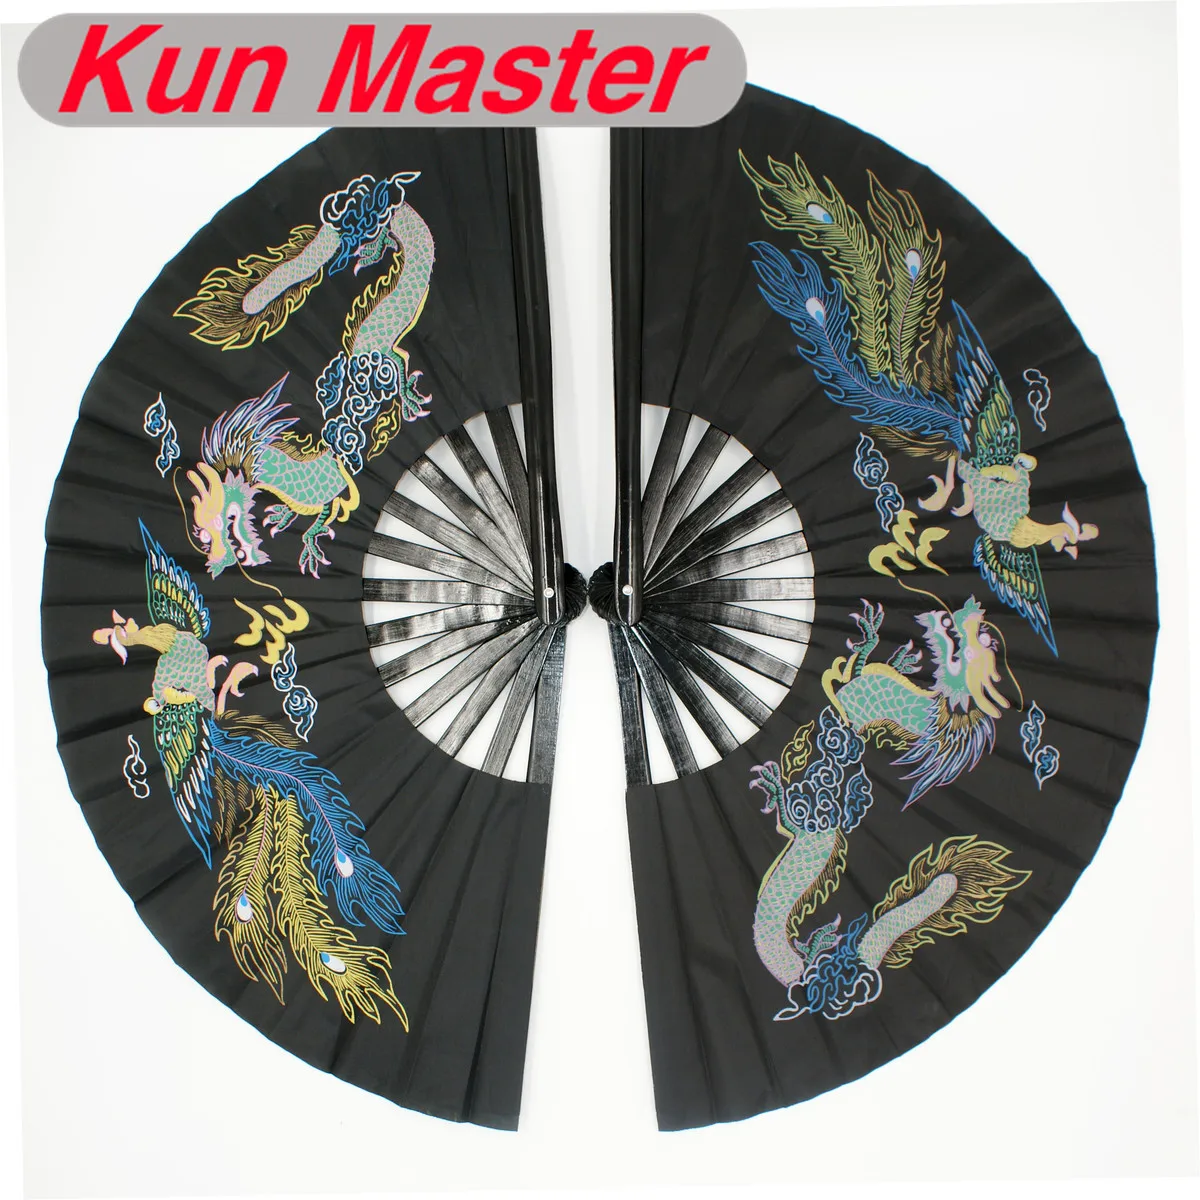 Бамбуковый двойной Высококачественный Вентилятор Tai Chi для боевых искусств вентилятор кунг-фу черный чехол китайский дракон и Феникс узор